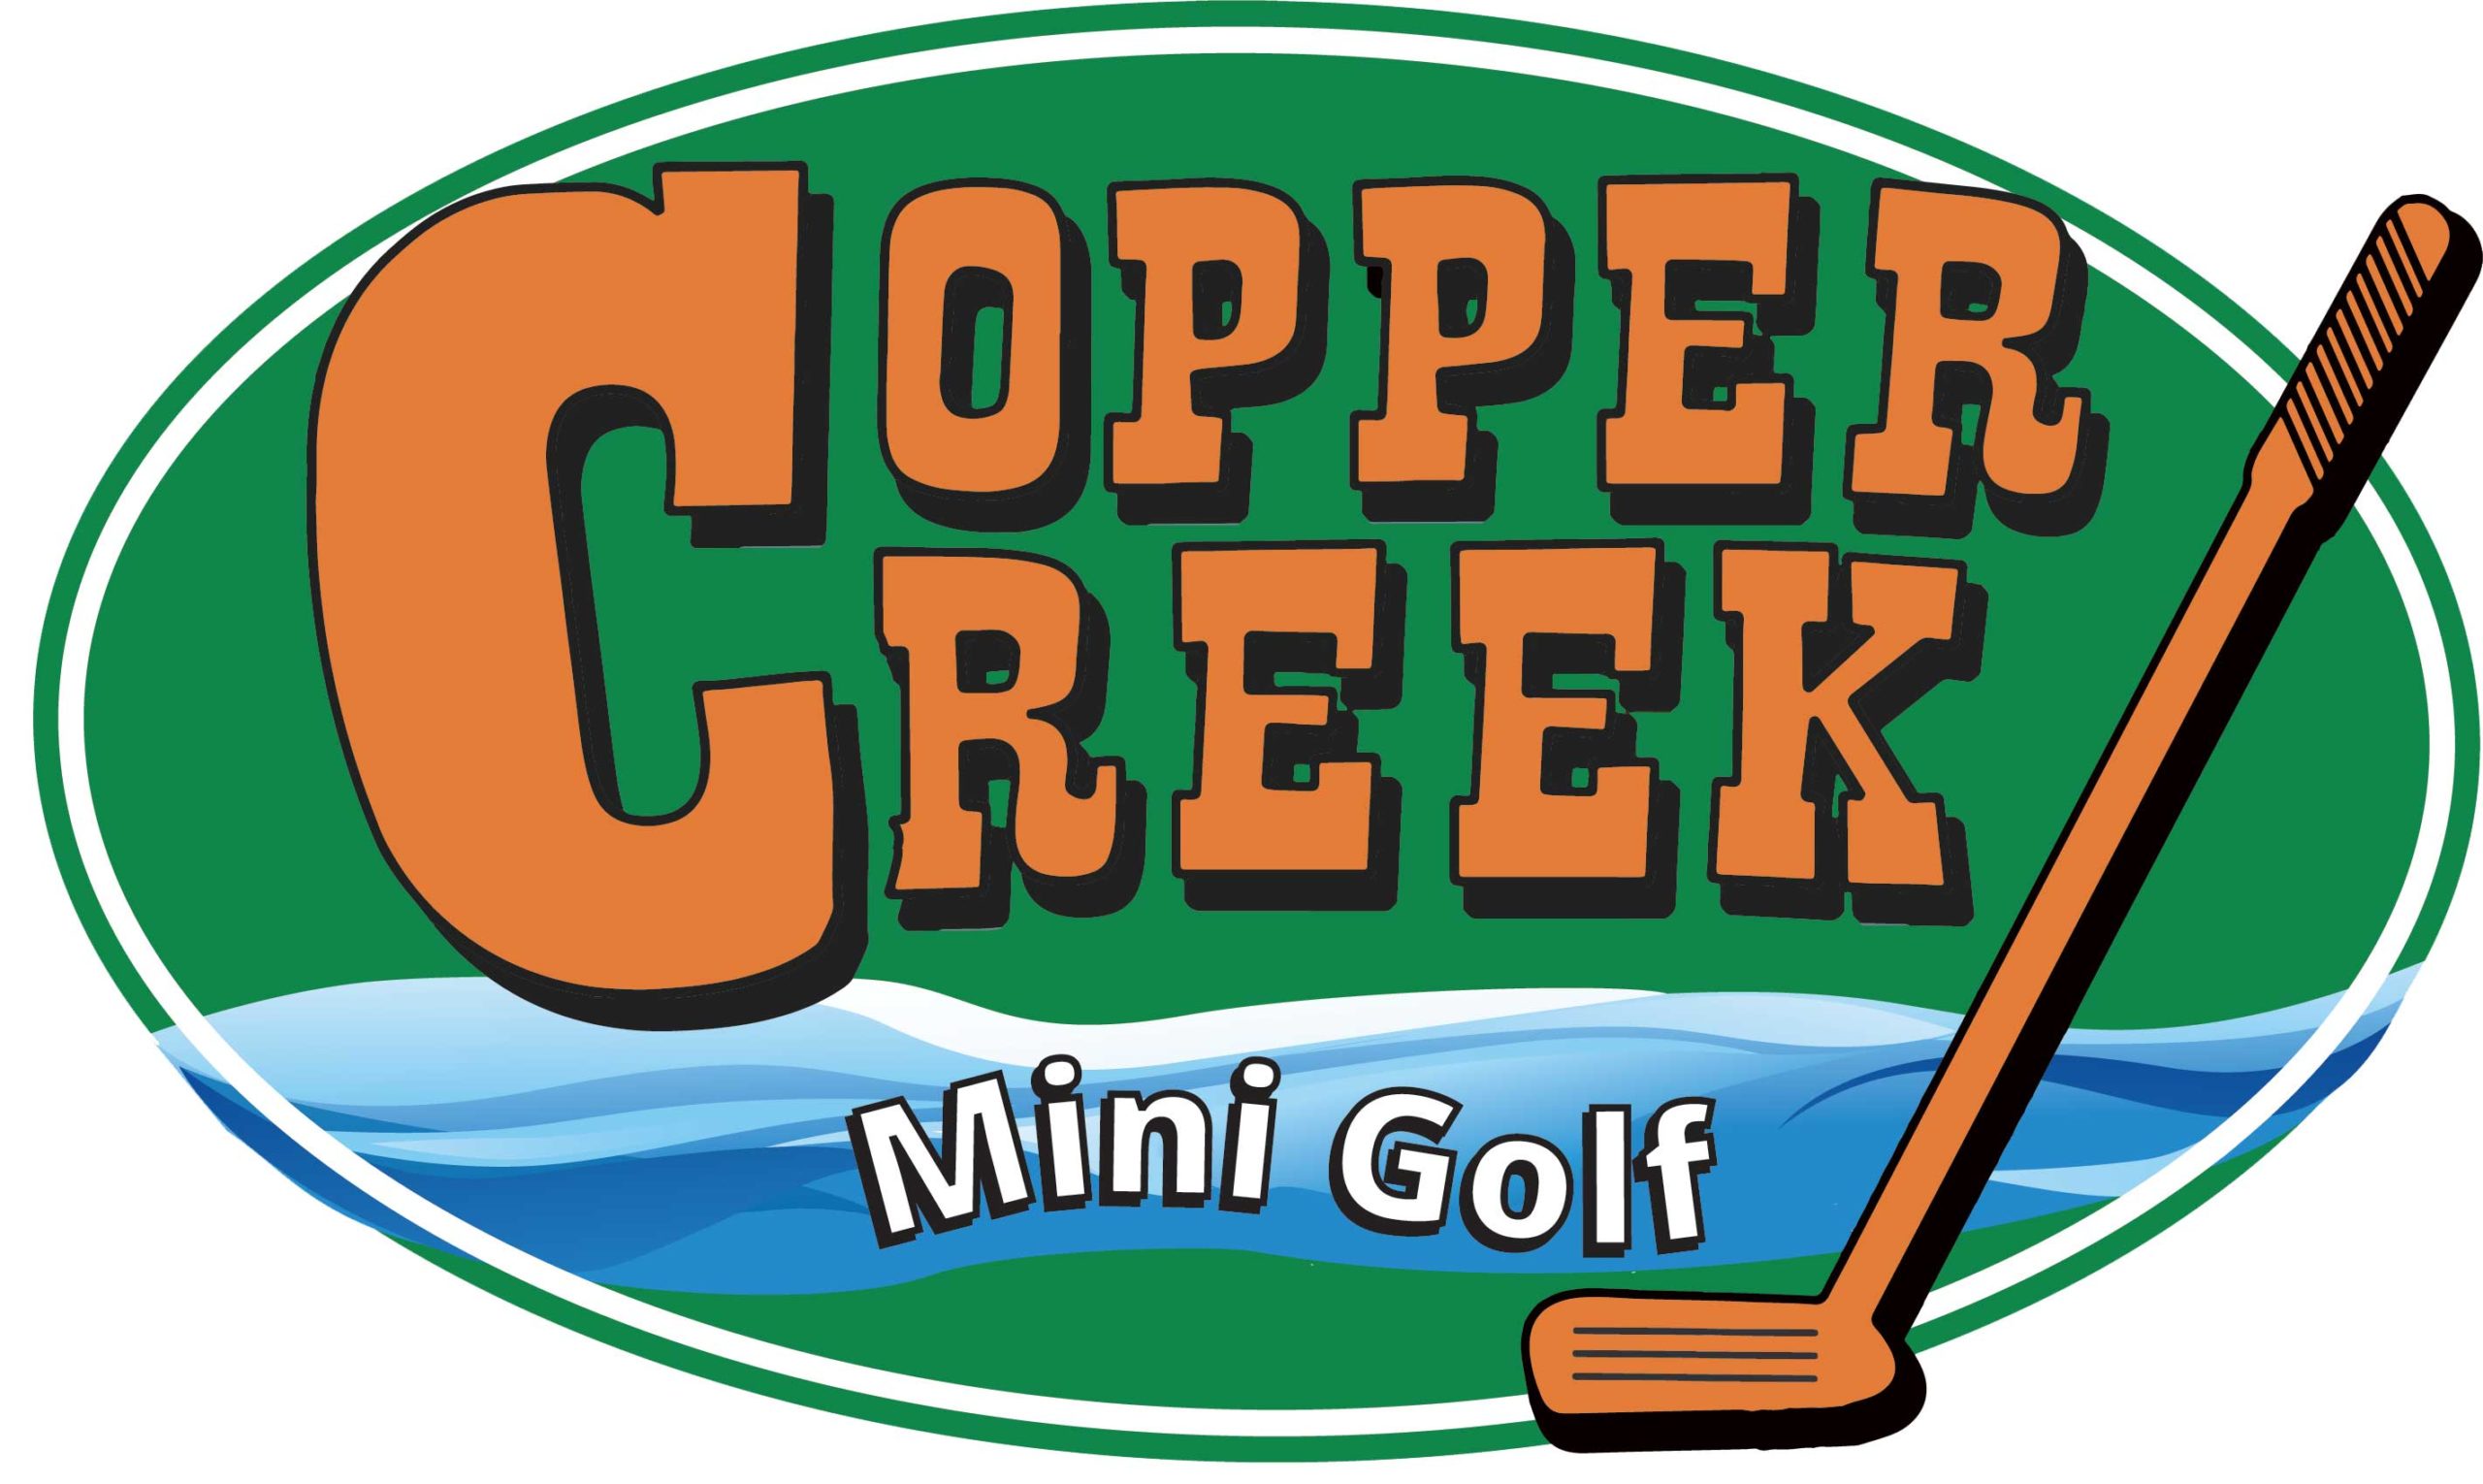 Copper Creek mini golf